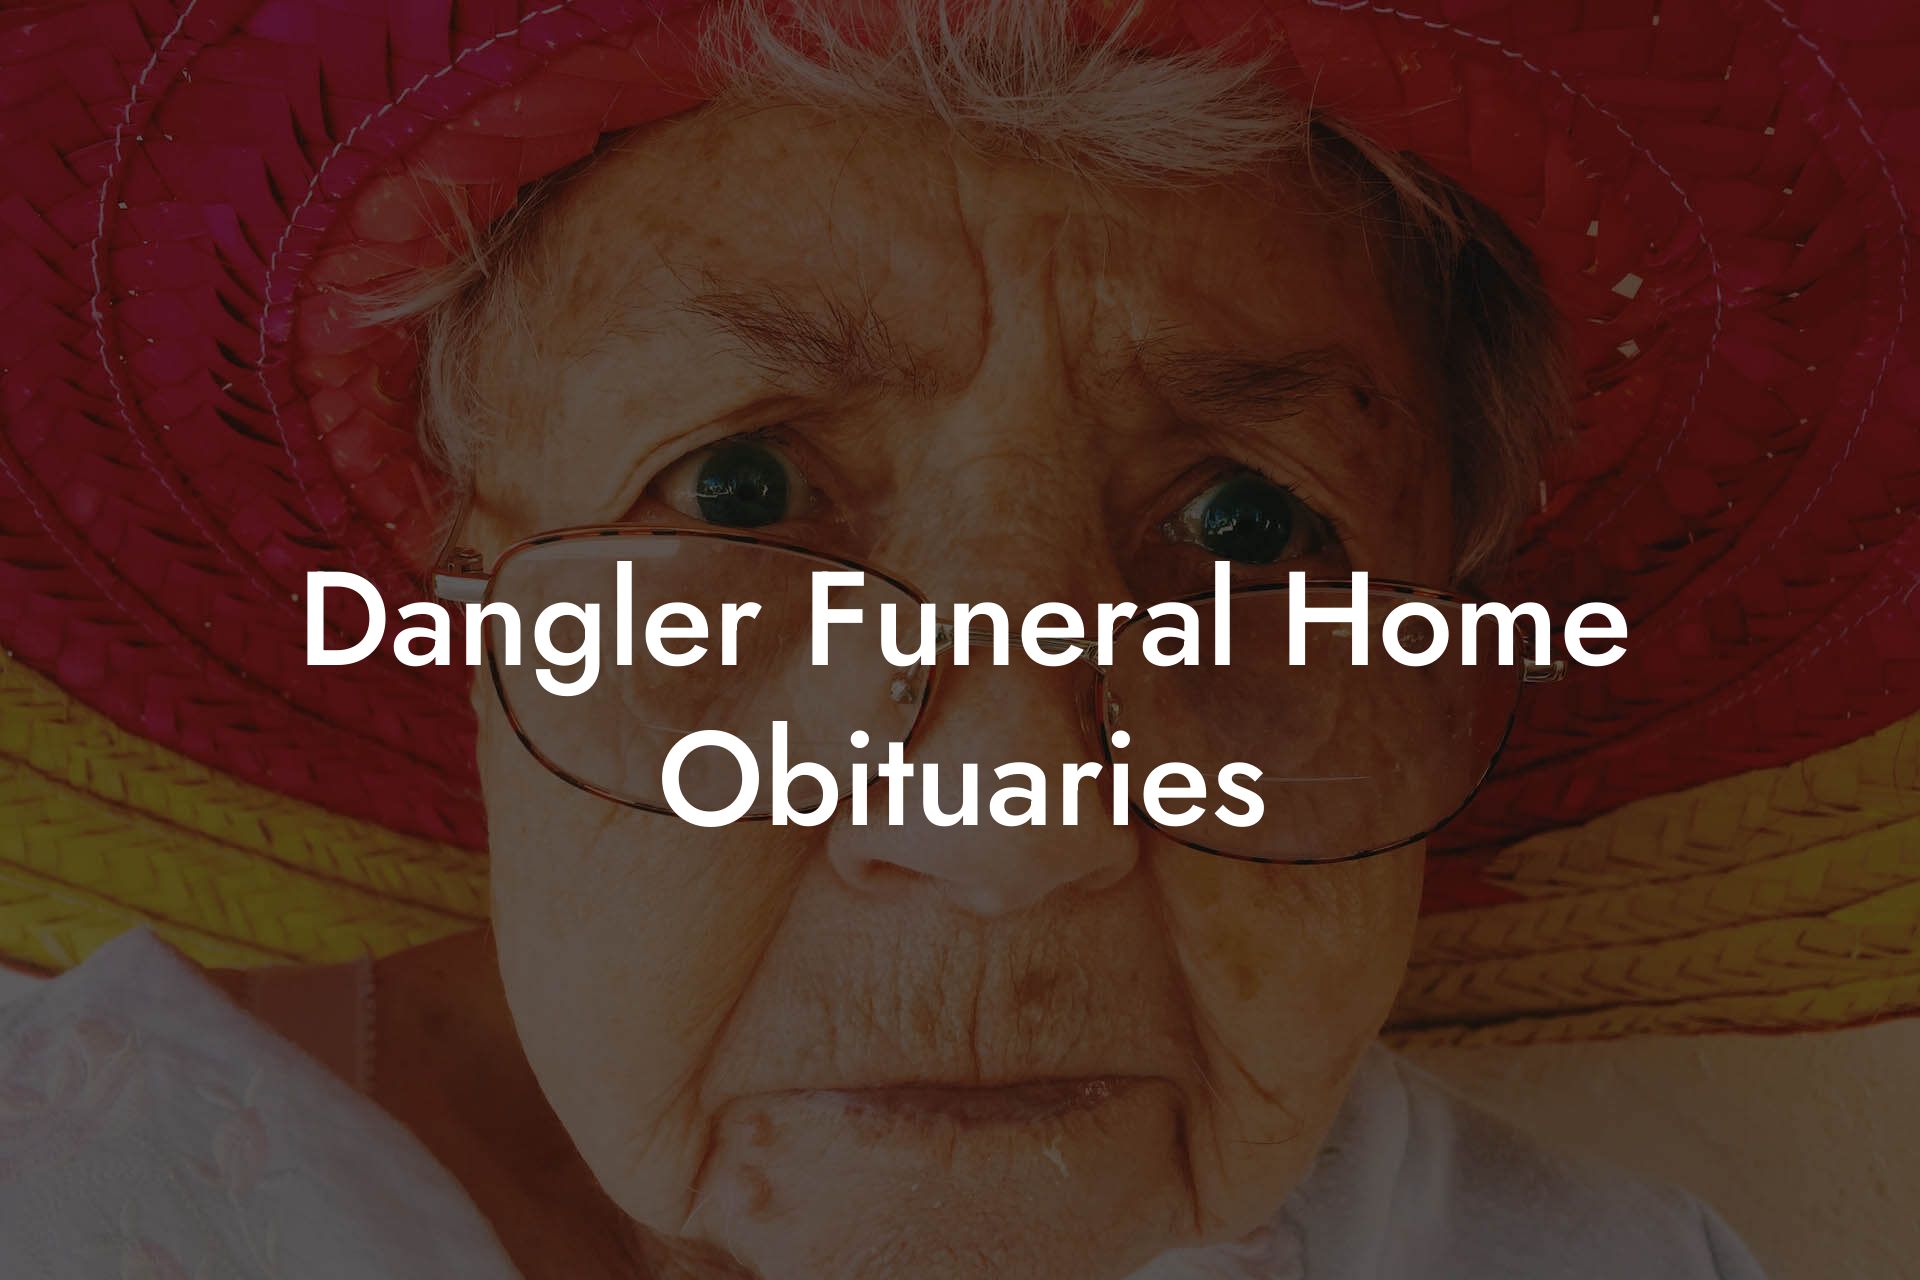 Dangler Funeral Home Obituaries